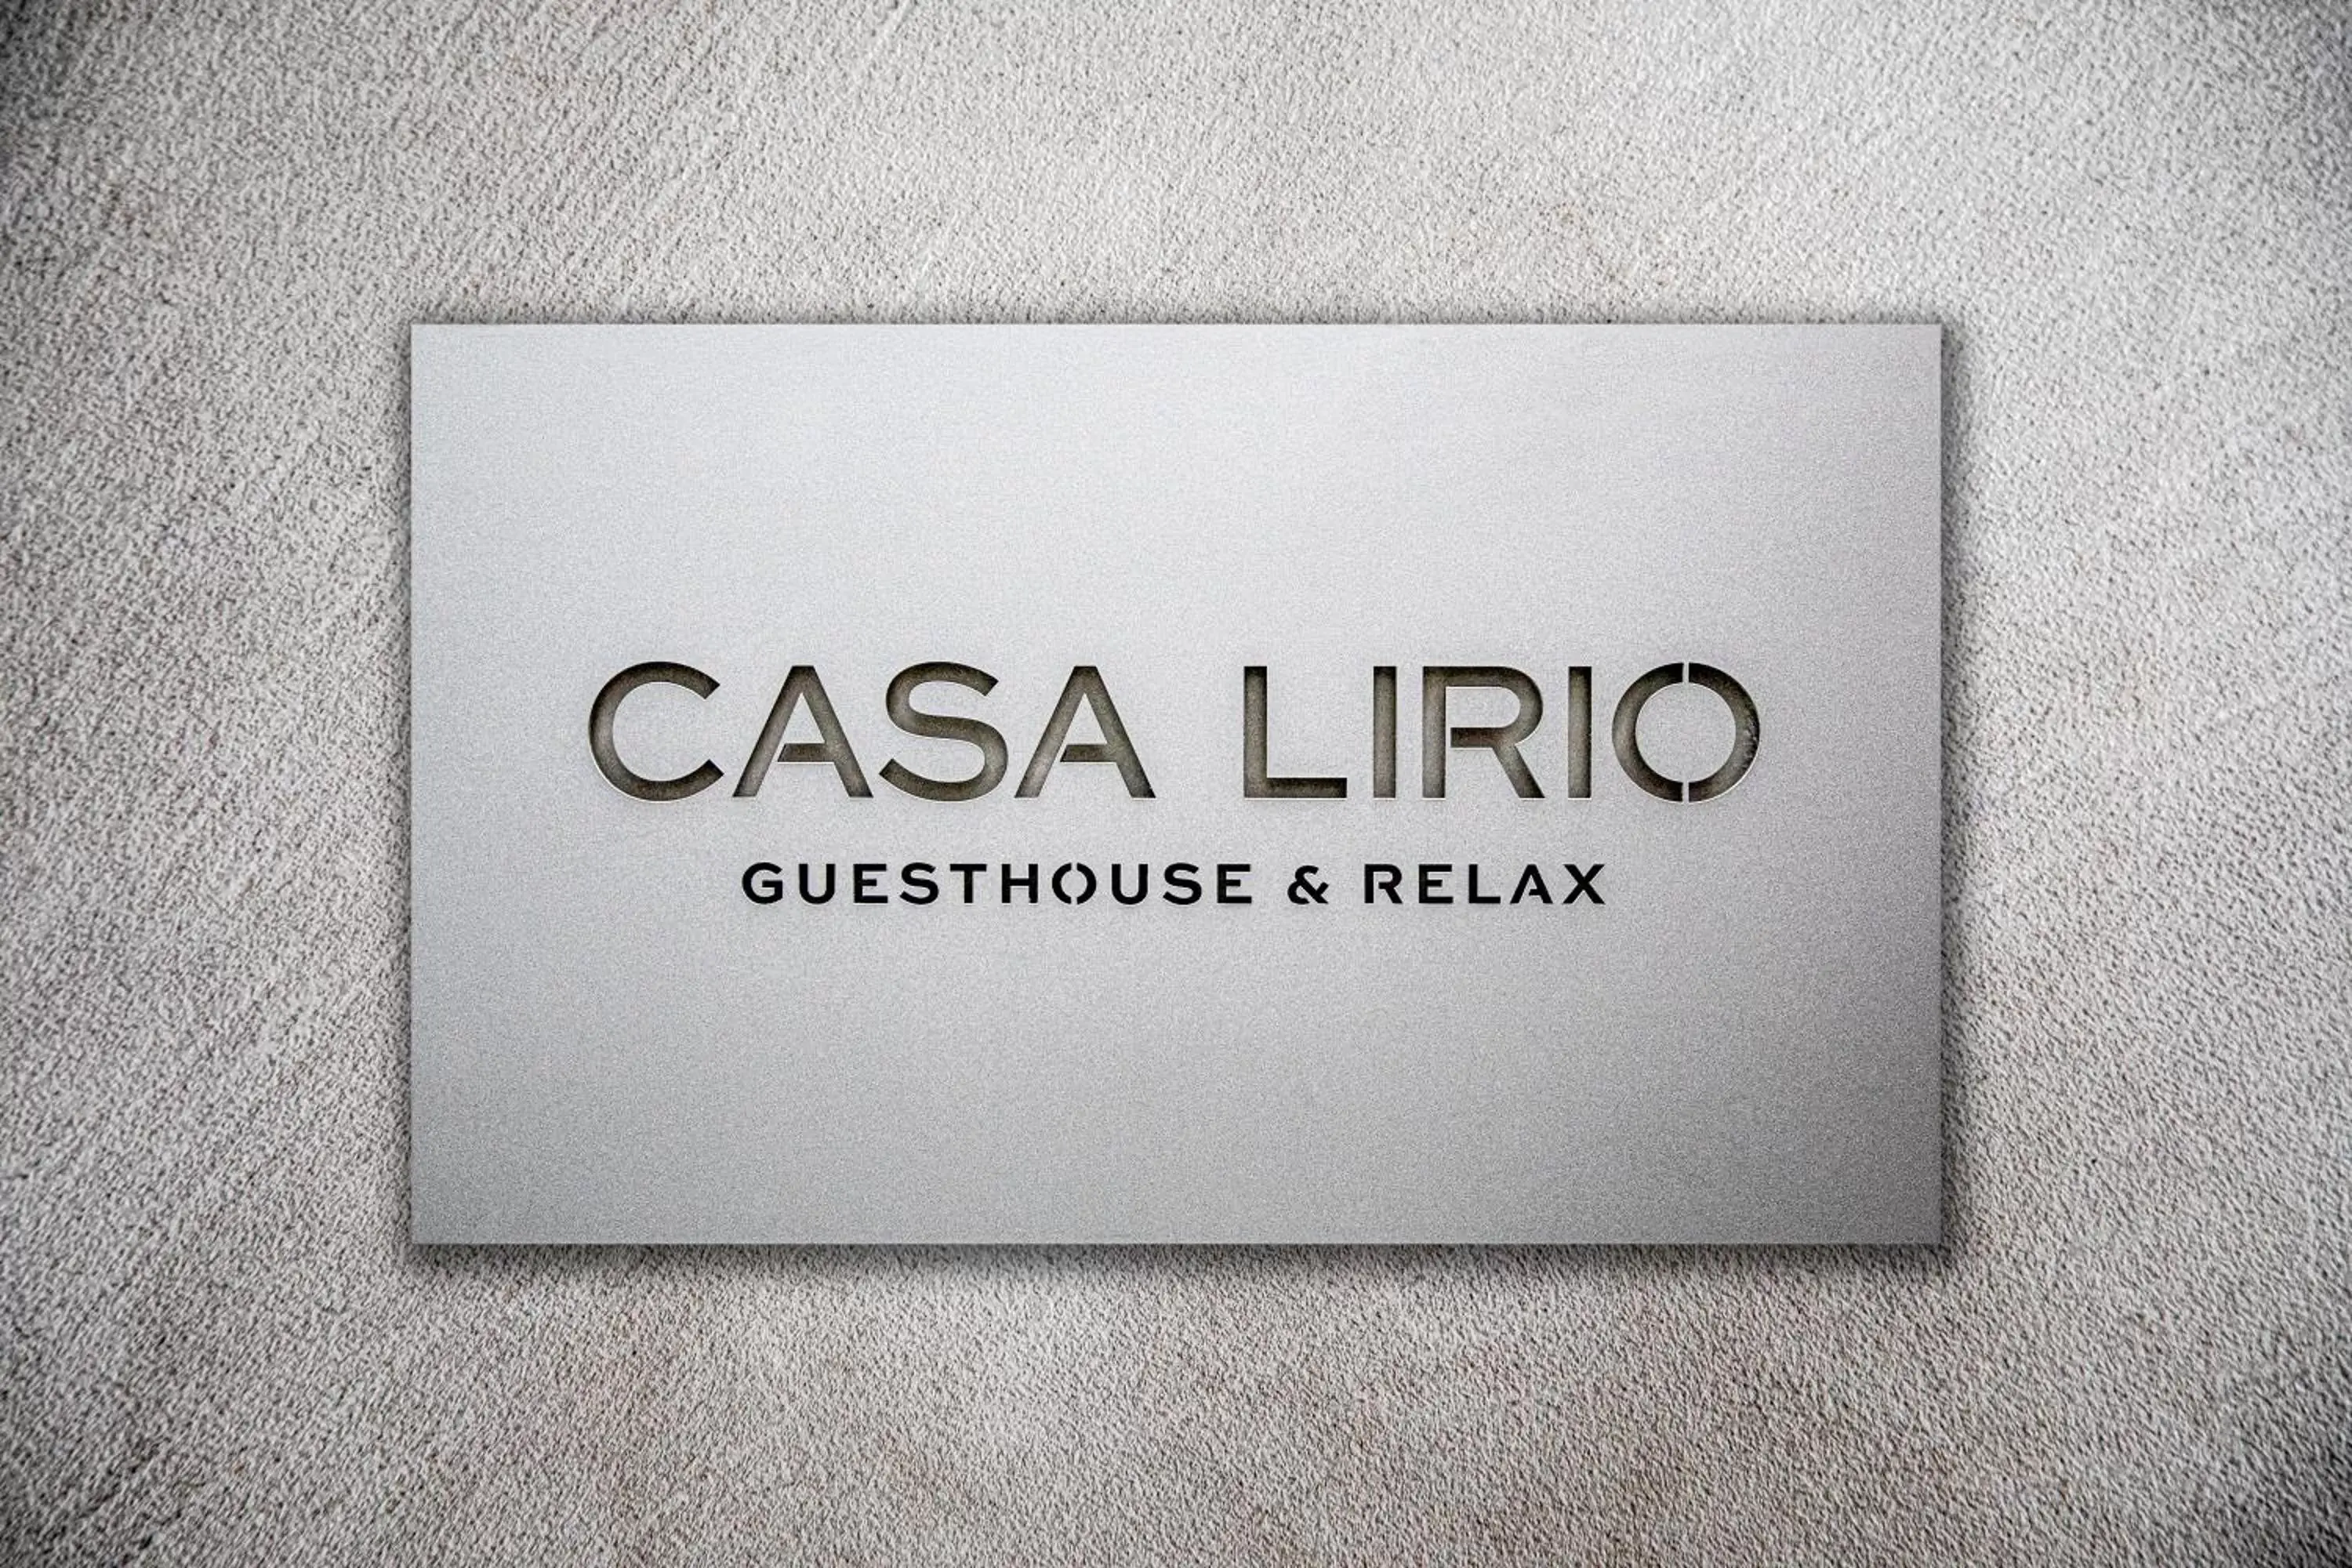 Property logo or sign in Casa Lirio